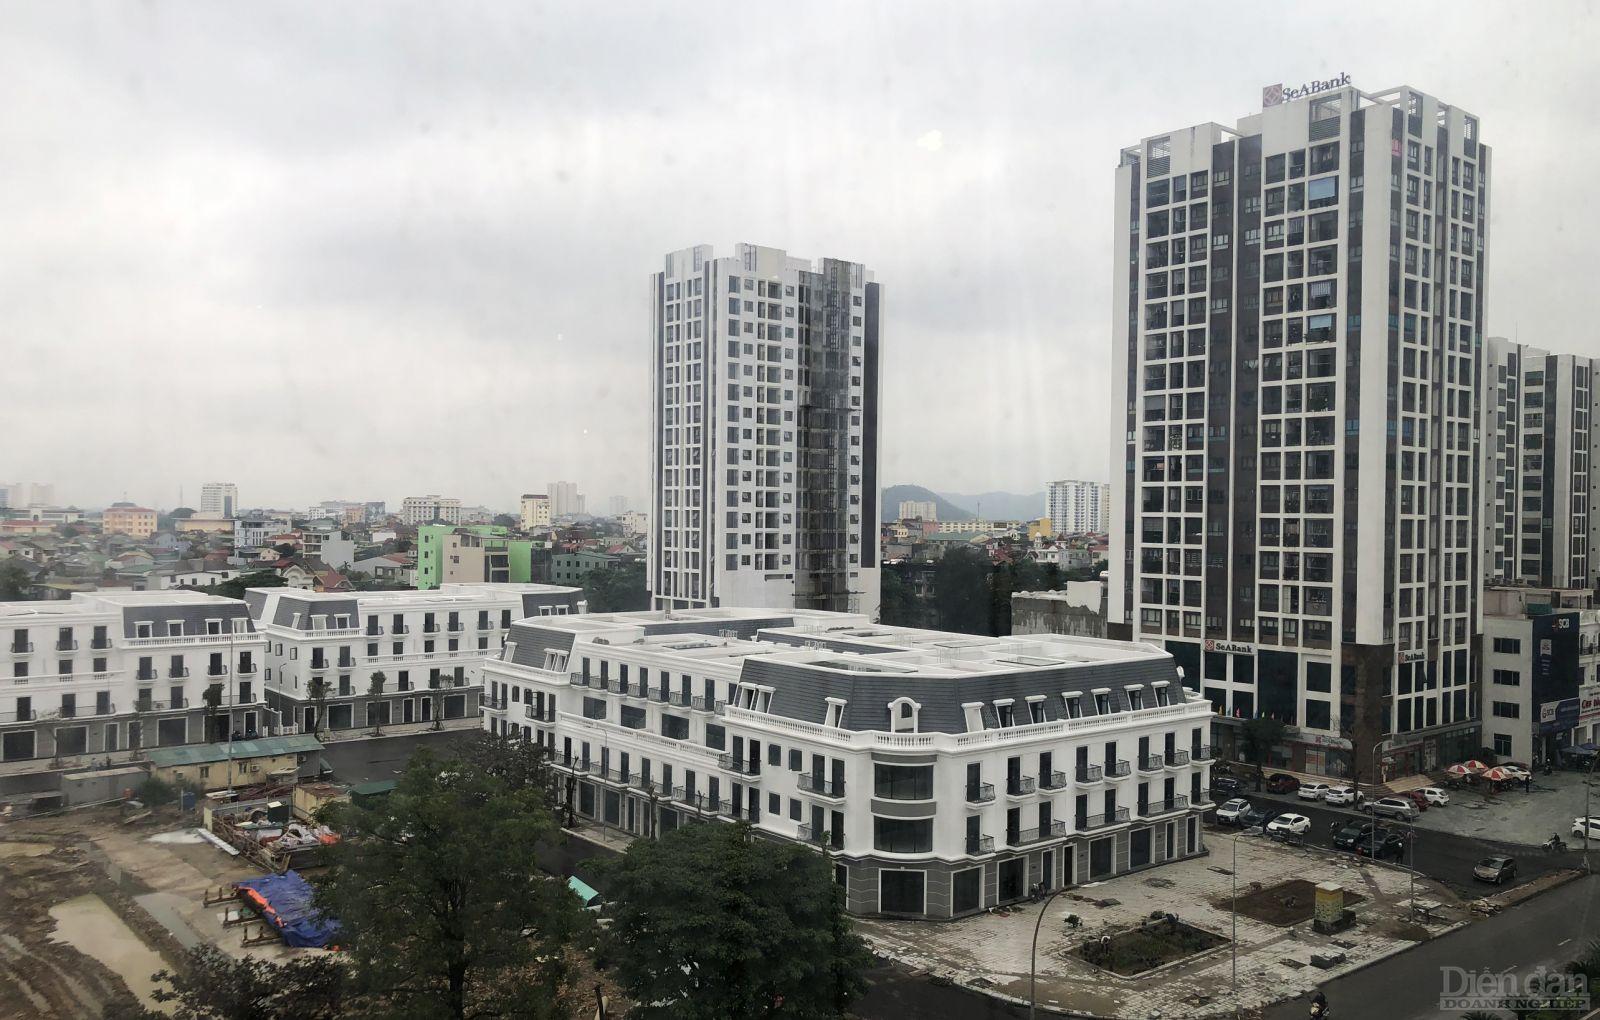 Khu B Chung cư Quang Trung, TP do Vingroup đầu tư cải tạo nay đã trở nên khang trang, đẹp đẽ (Ảnh chụp trong quá trình thi công dự án)